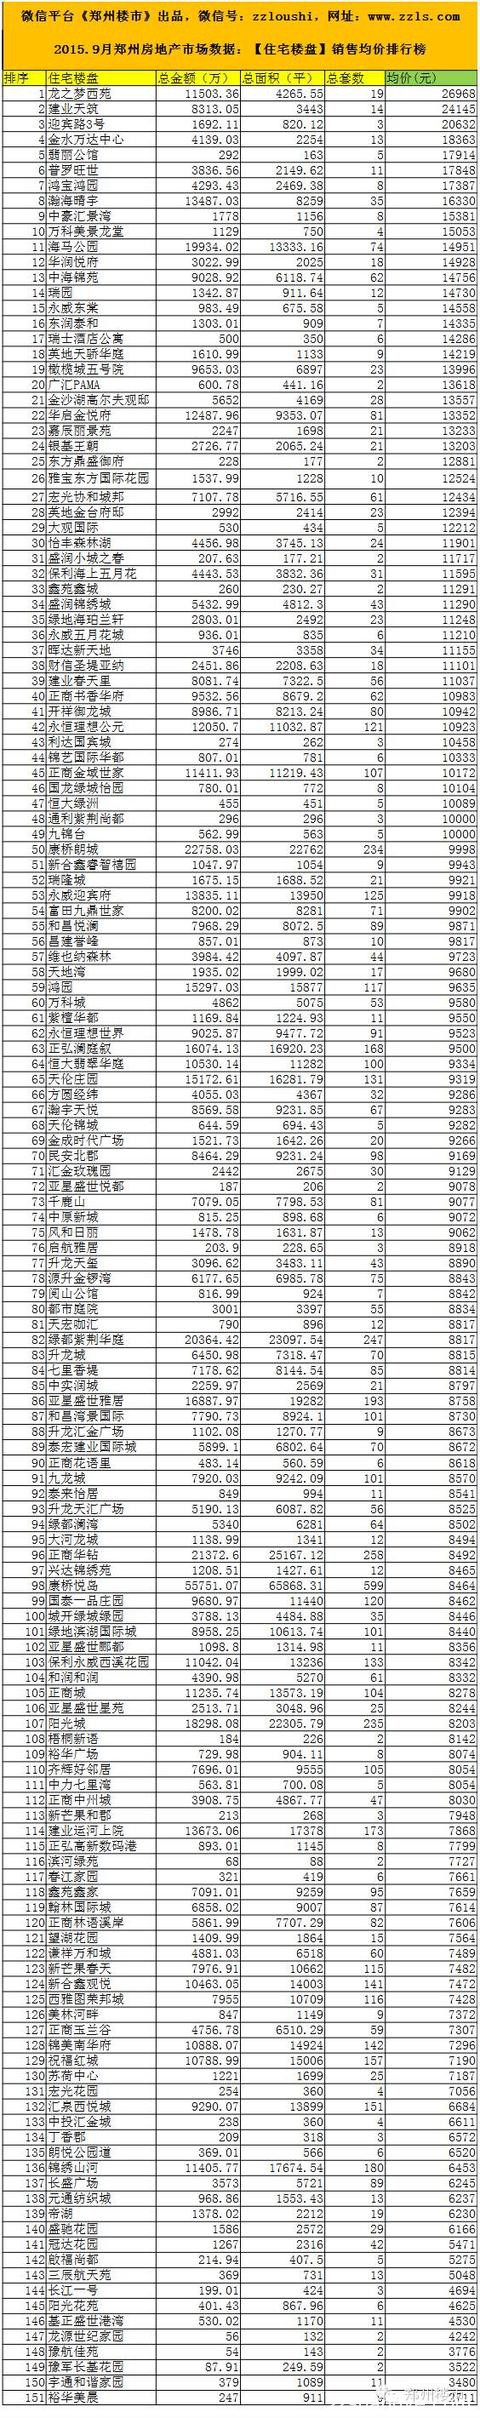 2015.9月郑州房地产市场数据